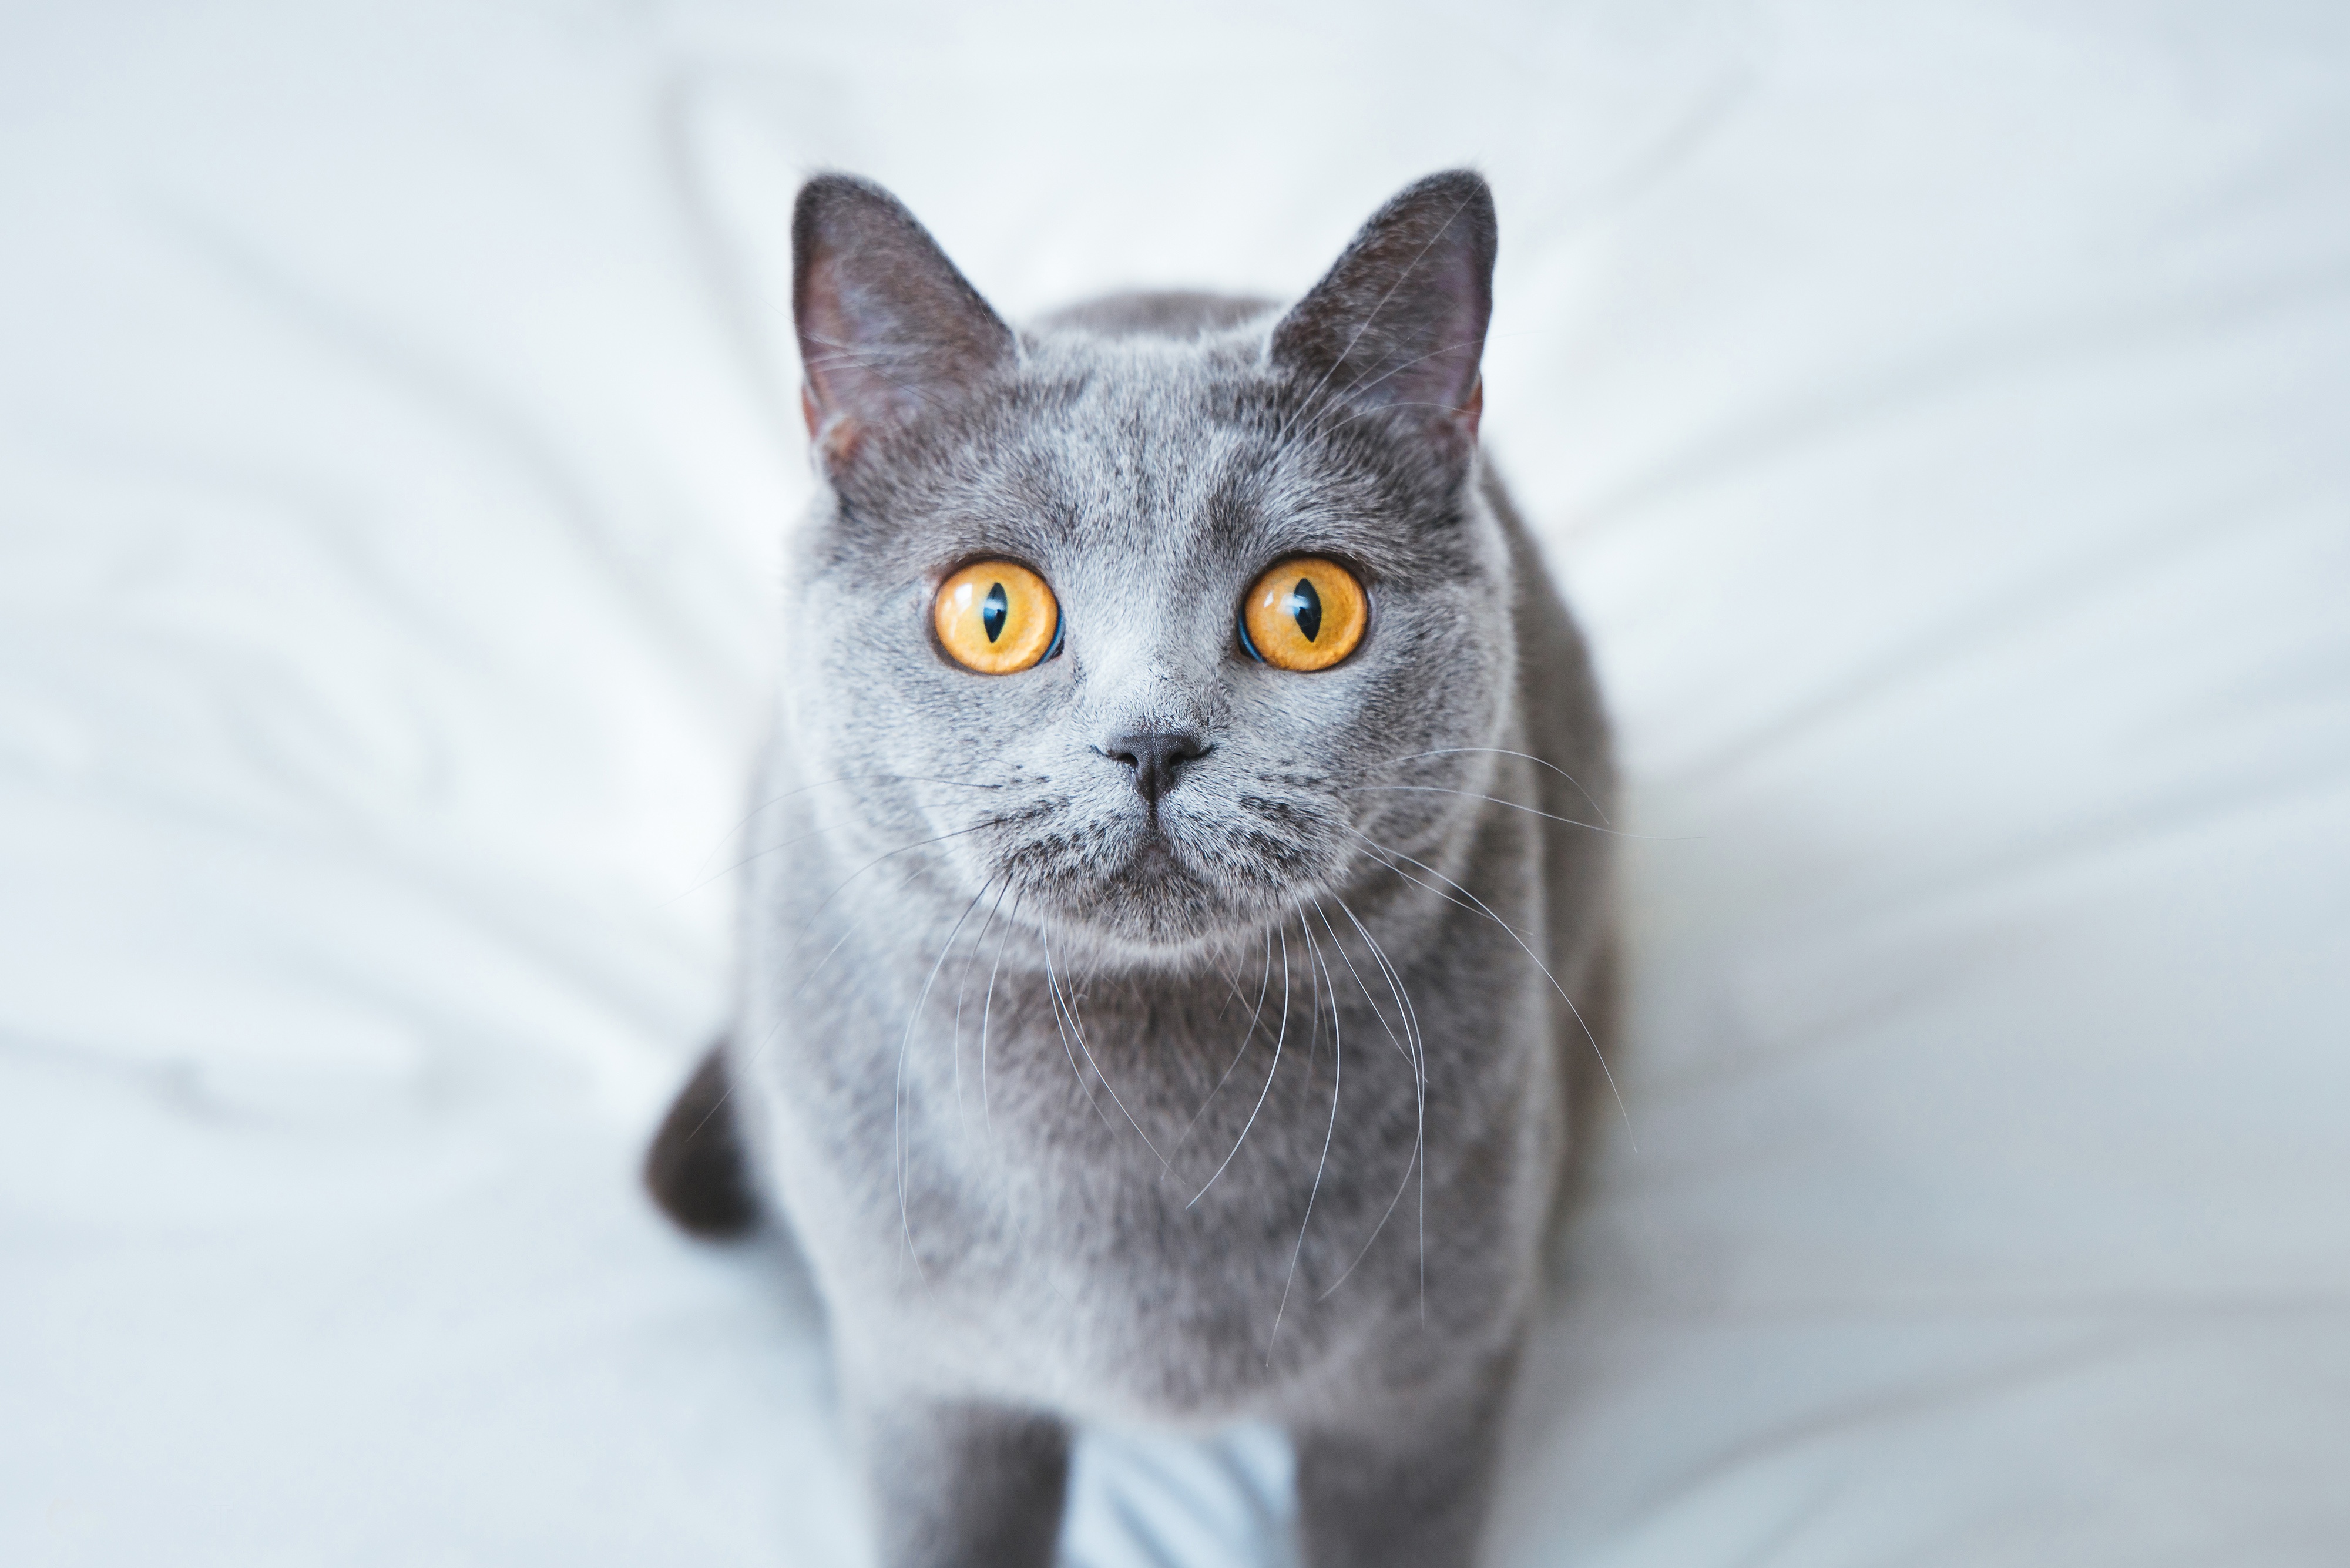 Порода серой кошки с серыми глазами. Британский короткошерстный кот полосатый. Британская кошка гладкошерстная. Британская кошка гладкошерстная серая. Британская короткошёрстная кошка.